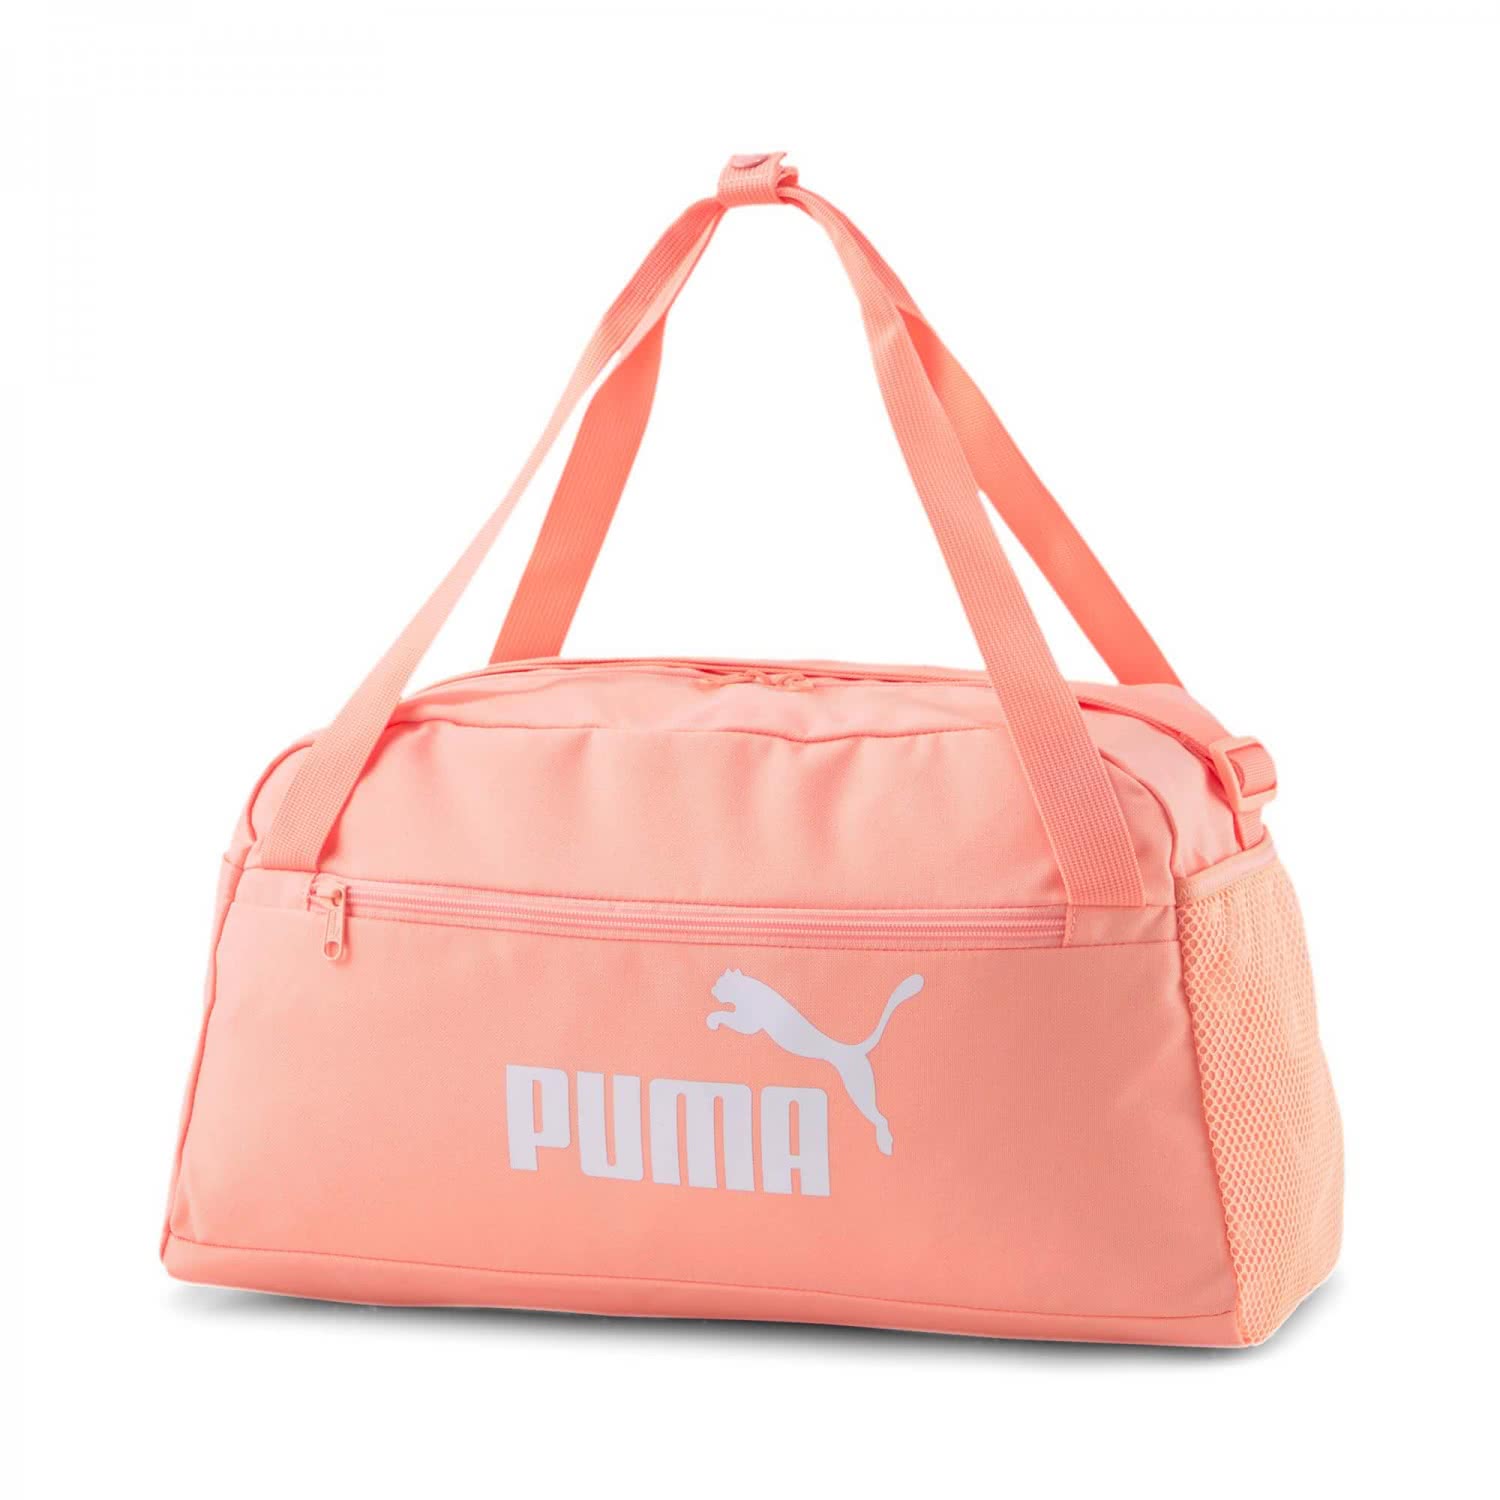 Puma 078033 Bag Sports Sporttasche Phase